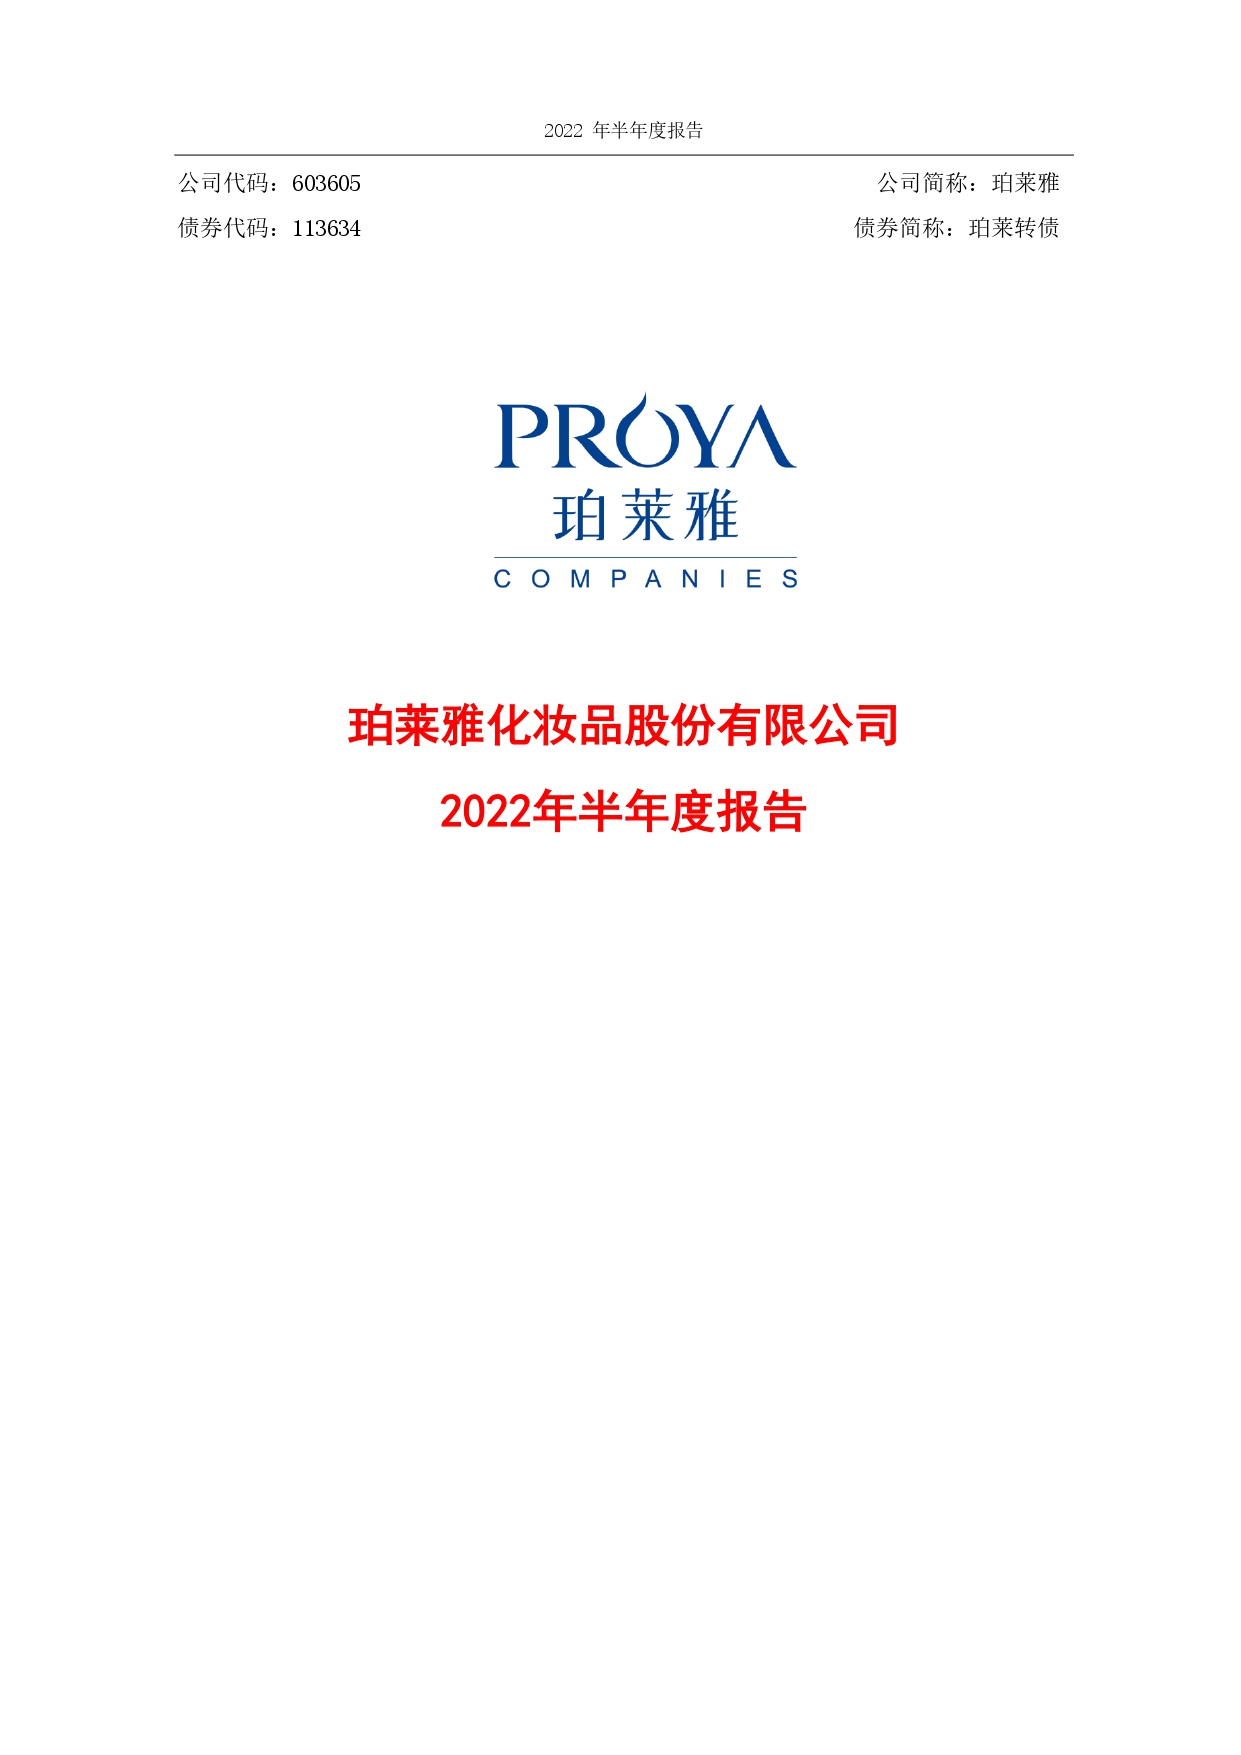 2022年半年度财务报告封面_page-0001.jpg